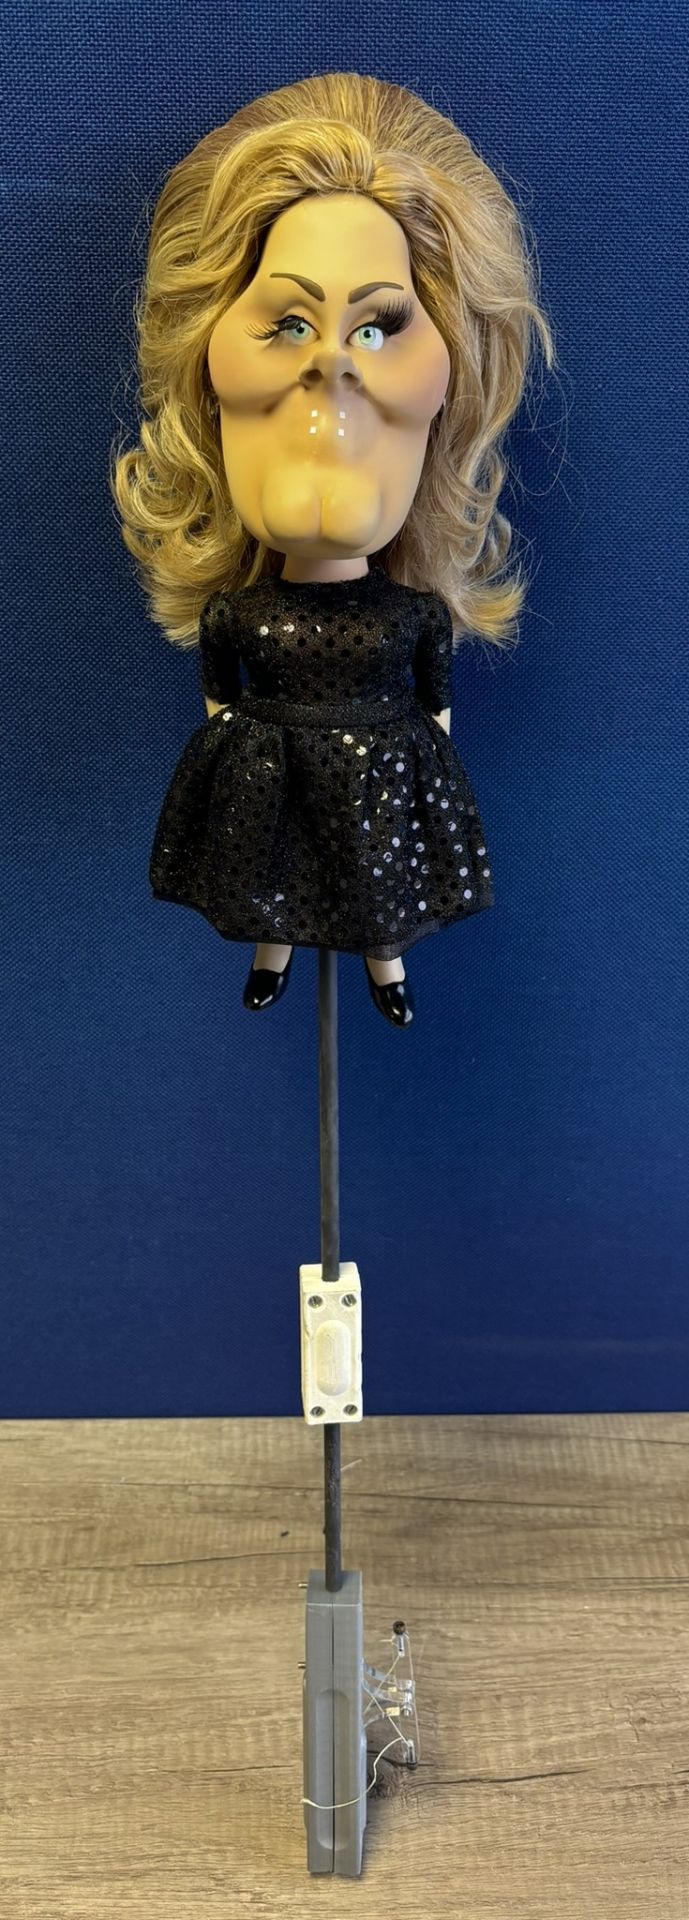 Newzoid puppet - Adele - Bild 3 aus 3